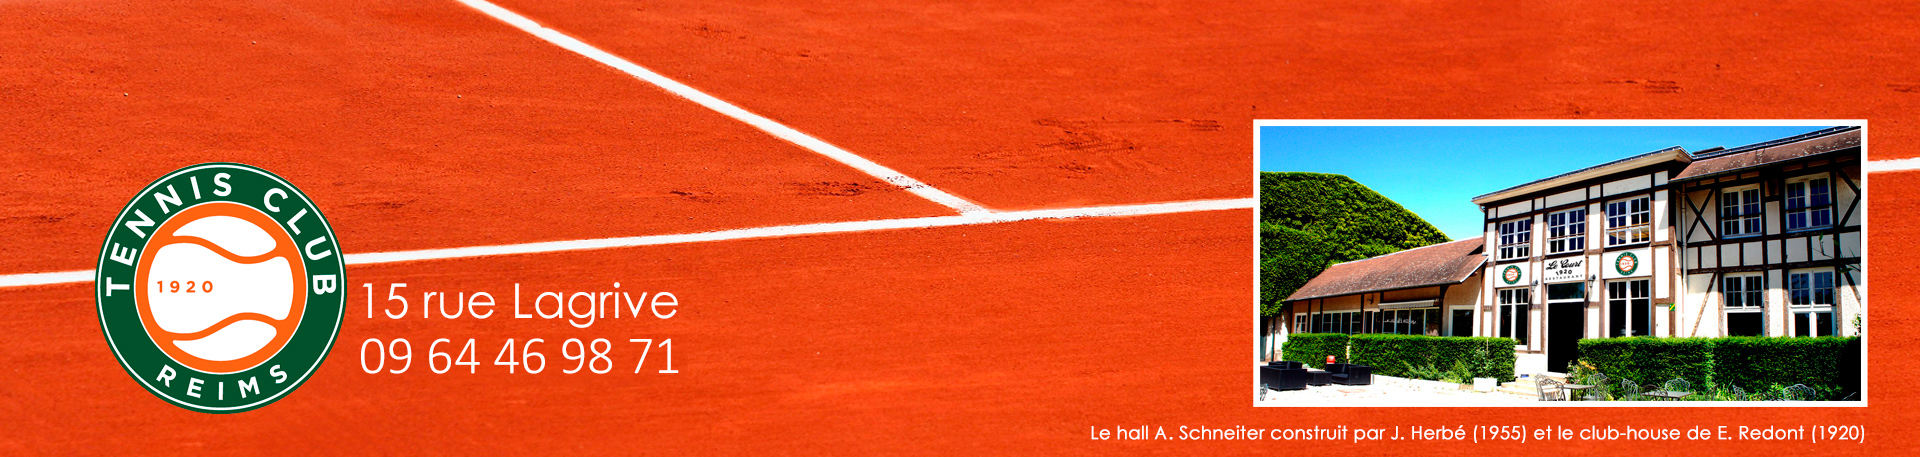 Tennis Club de Reims